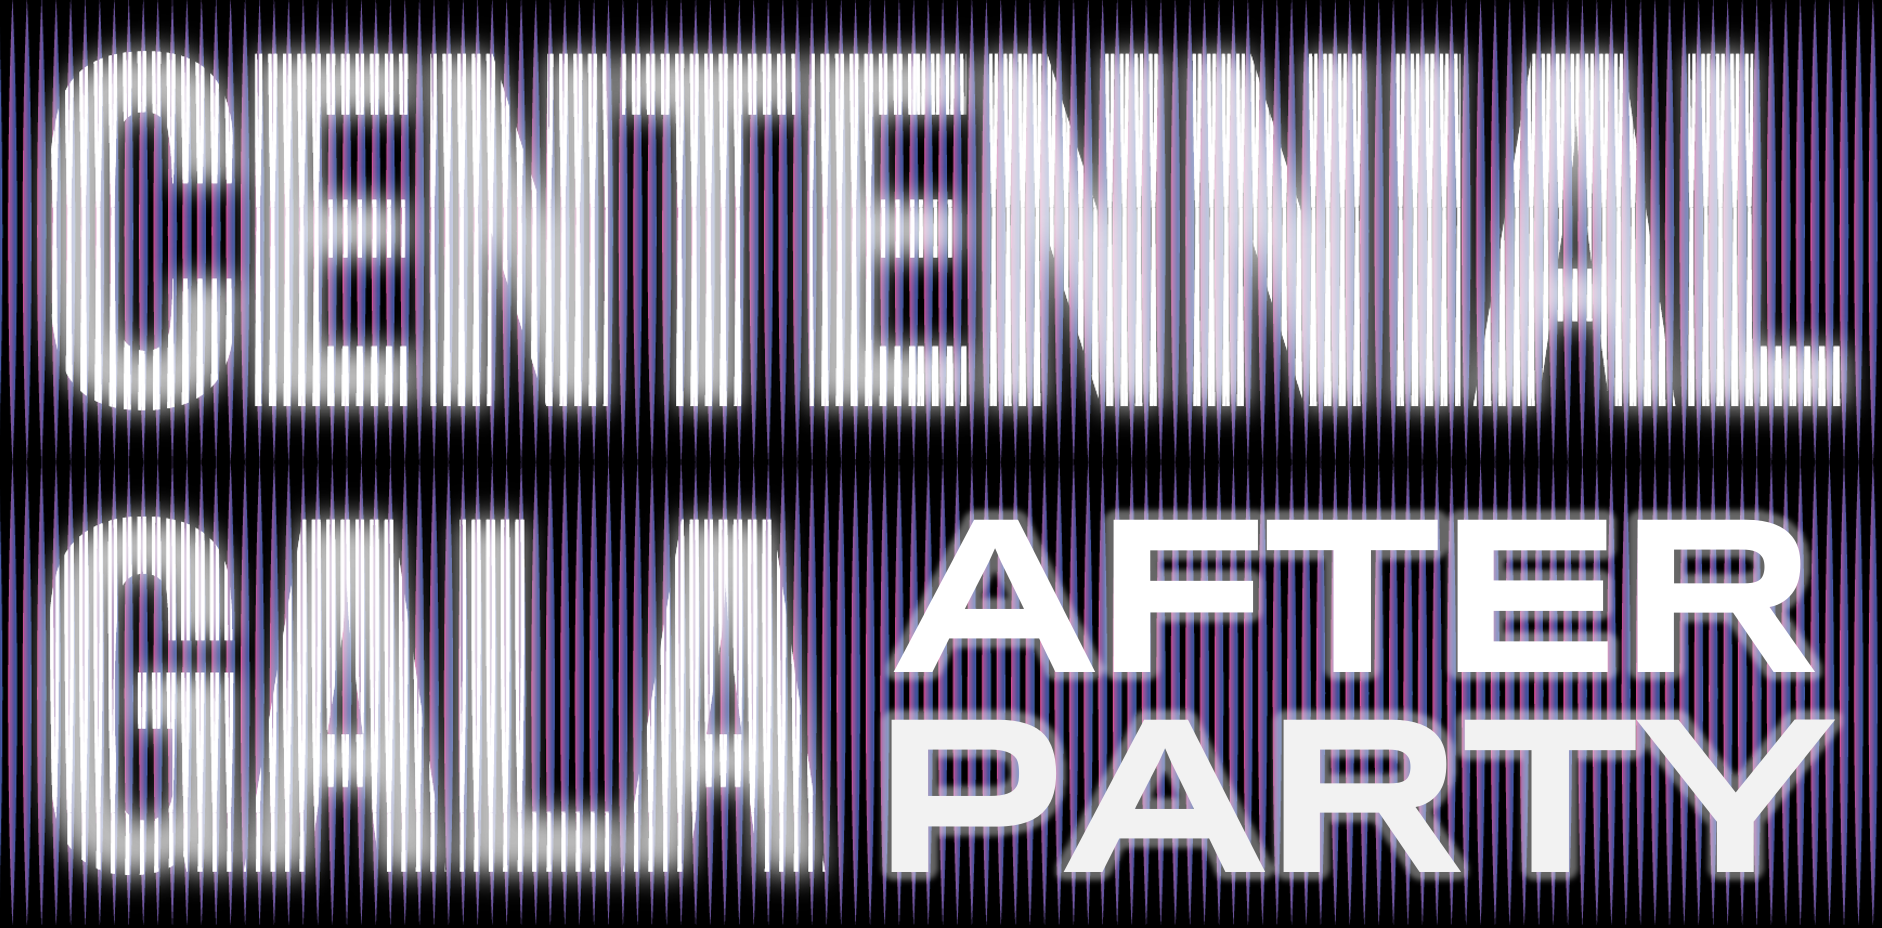 Gala du Centenaire : After Party.